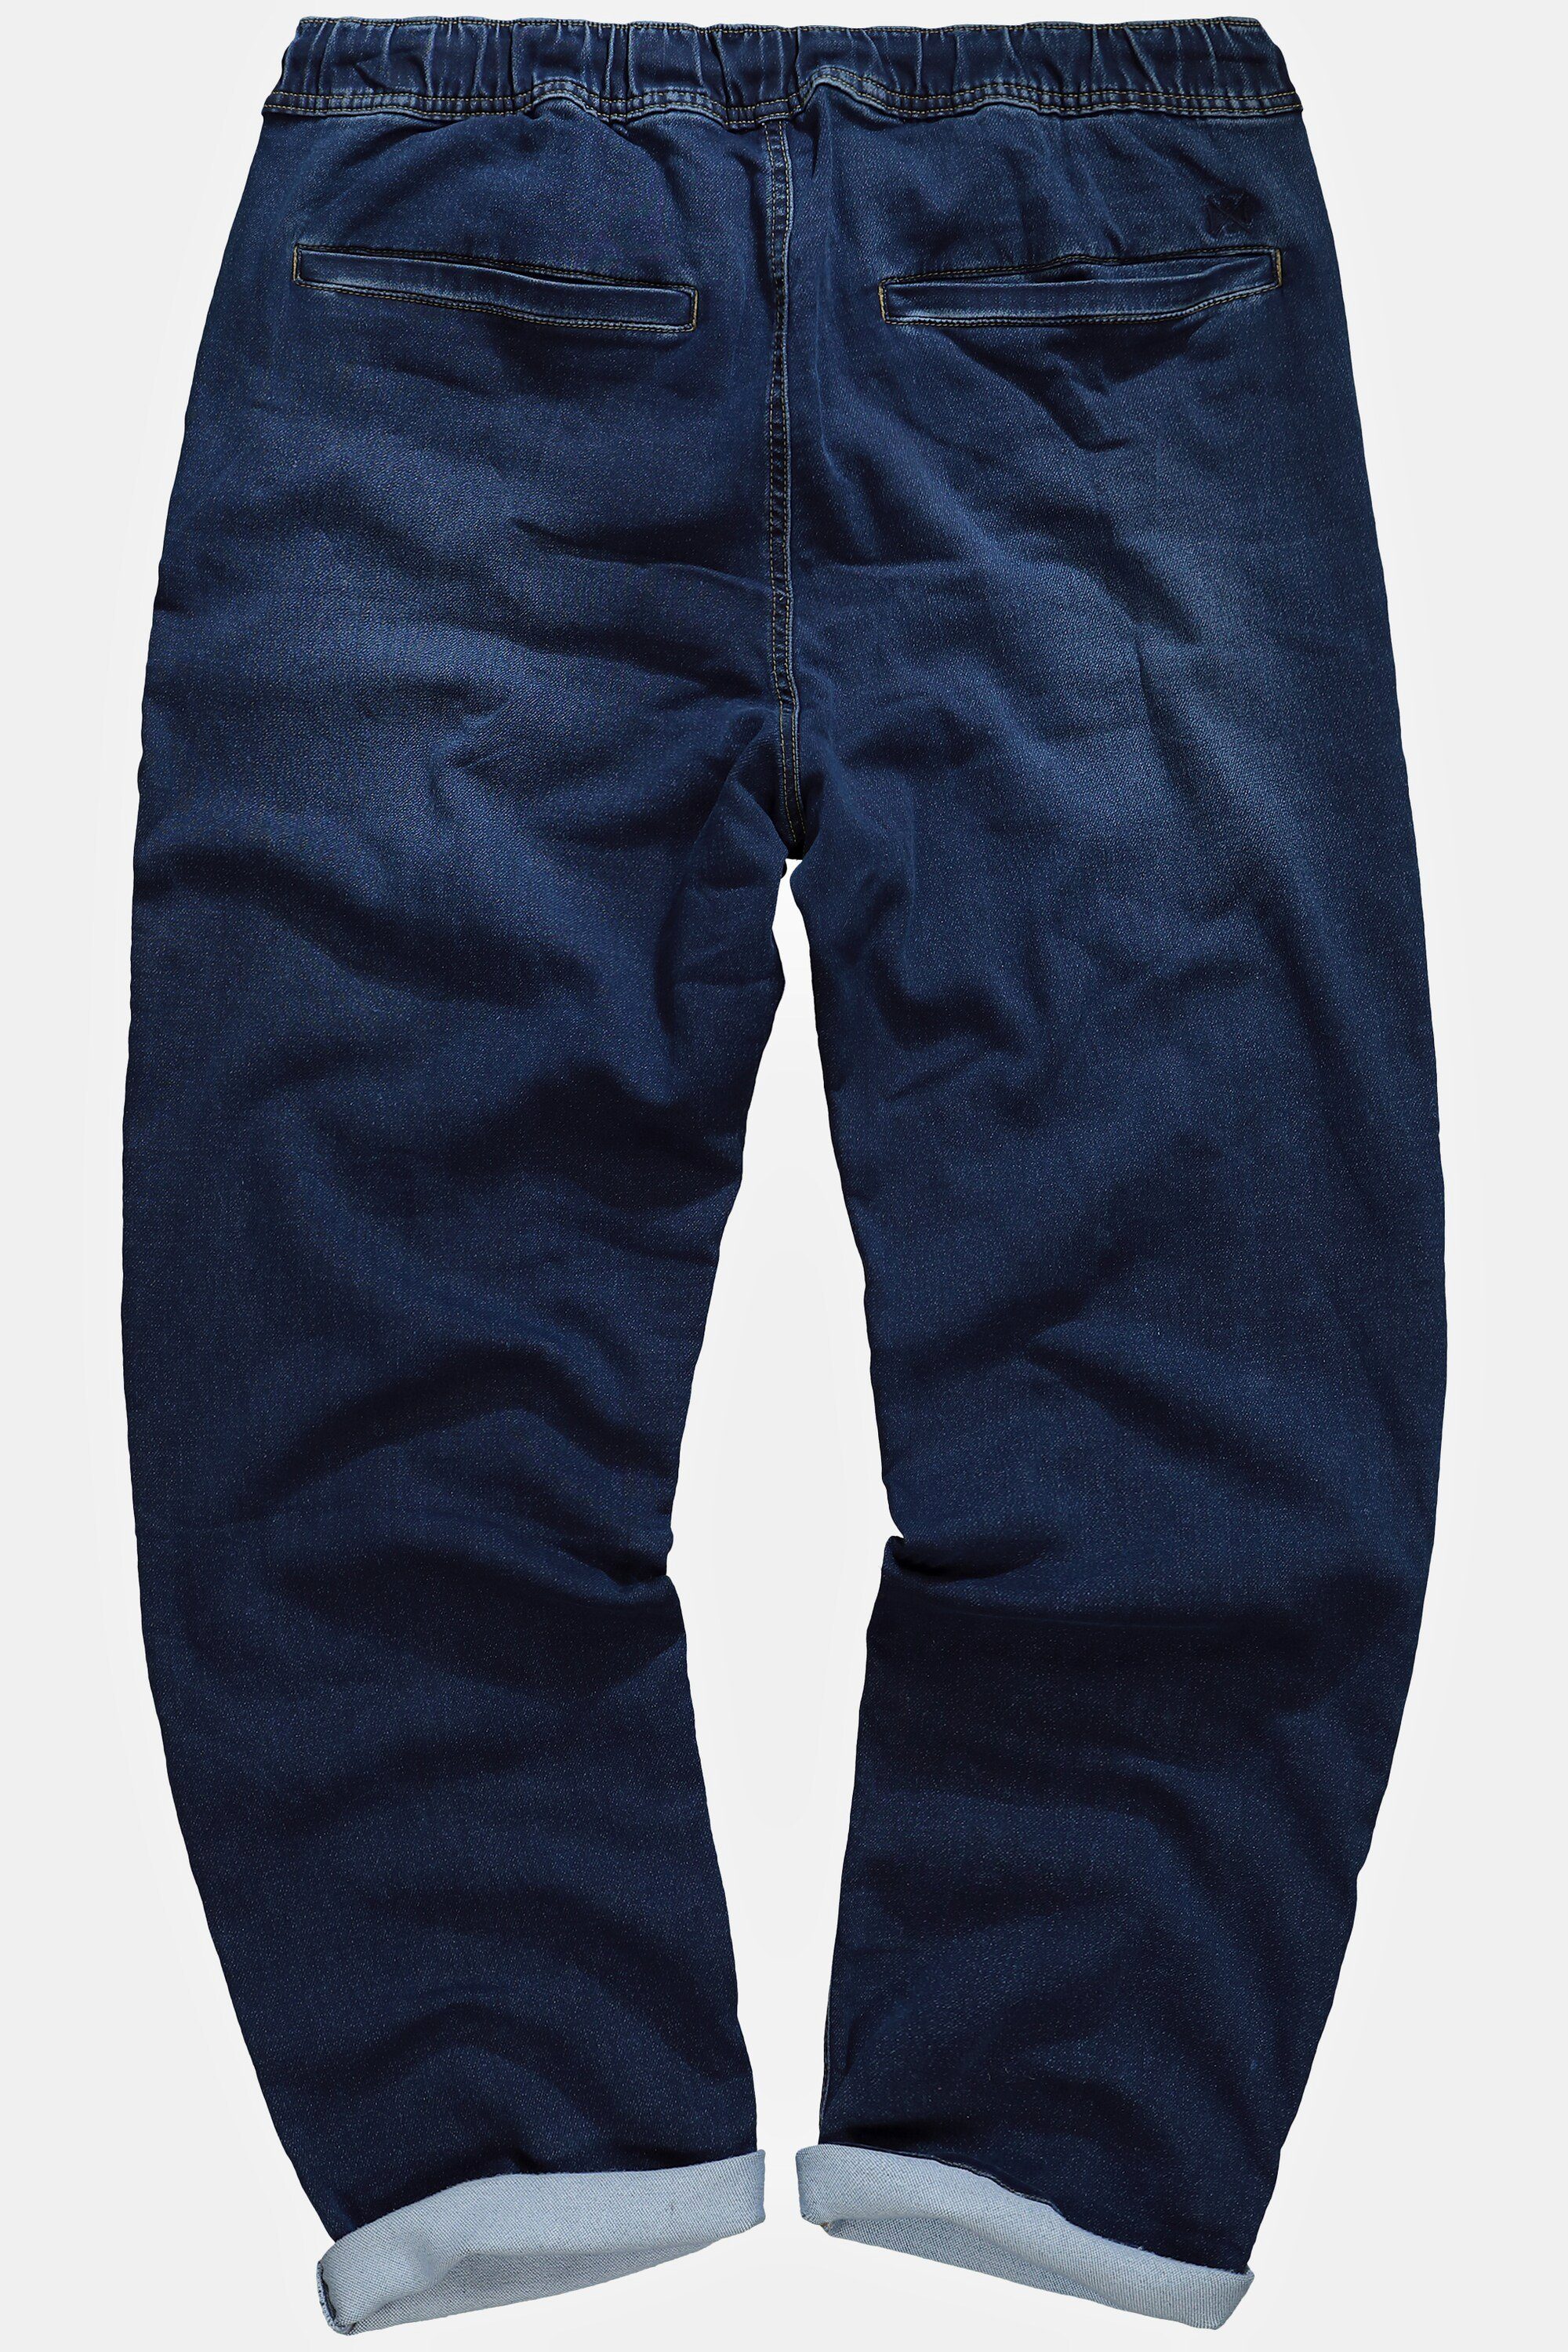 Cargohose JP1880 blue dark Fit FLEXNAMIC® Schlupfbund denim Denim Jeans Straight